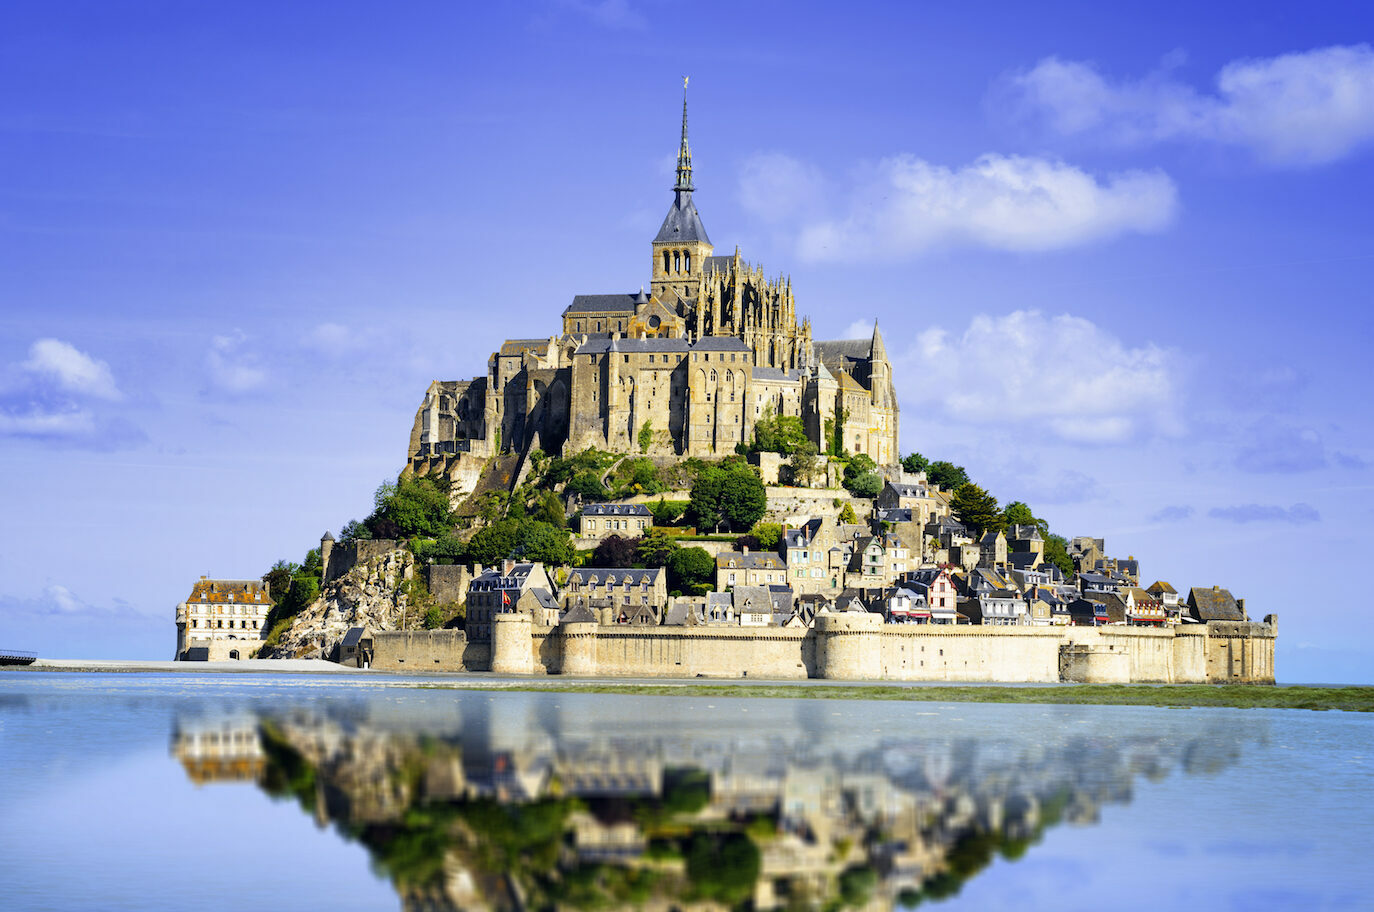 The Mont Saint Michel